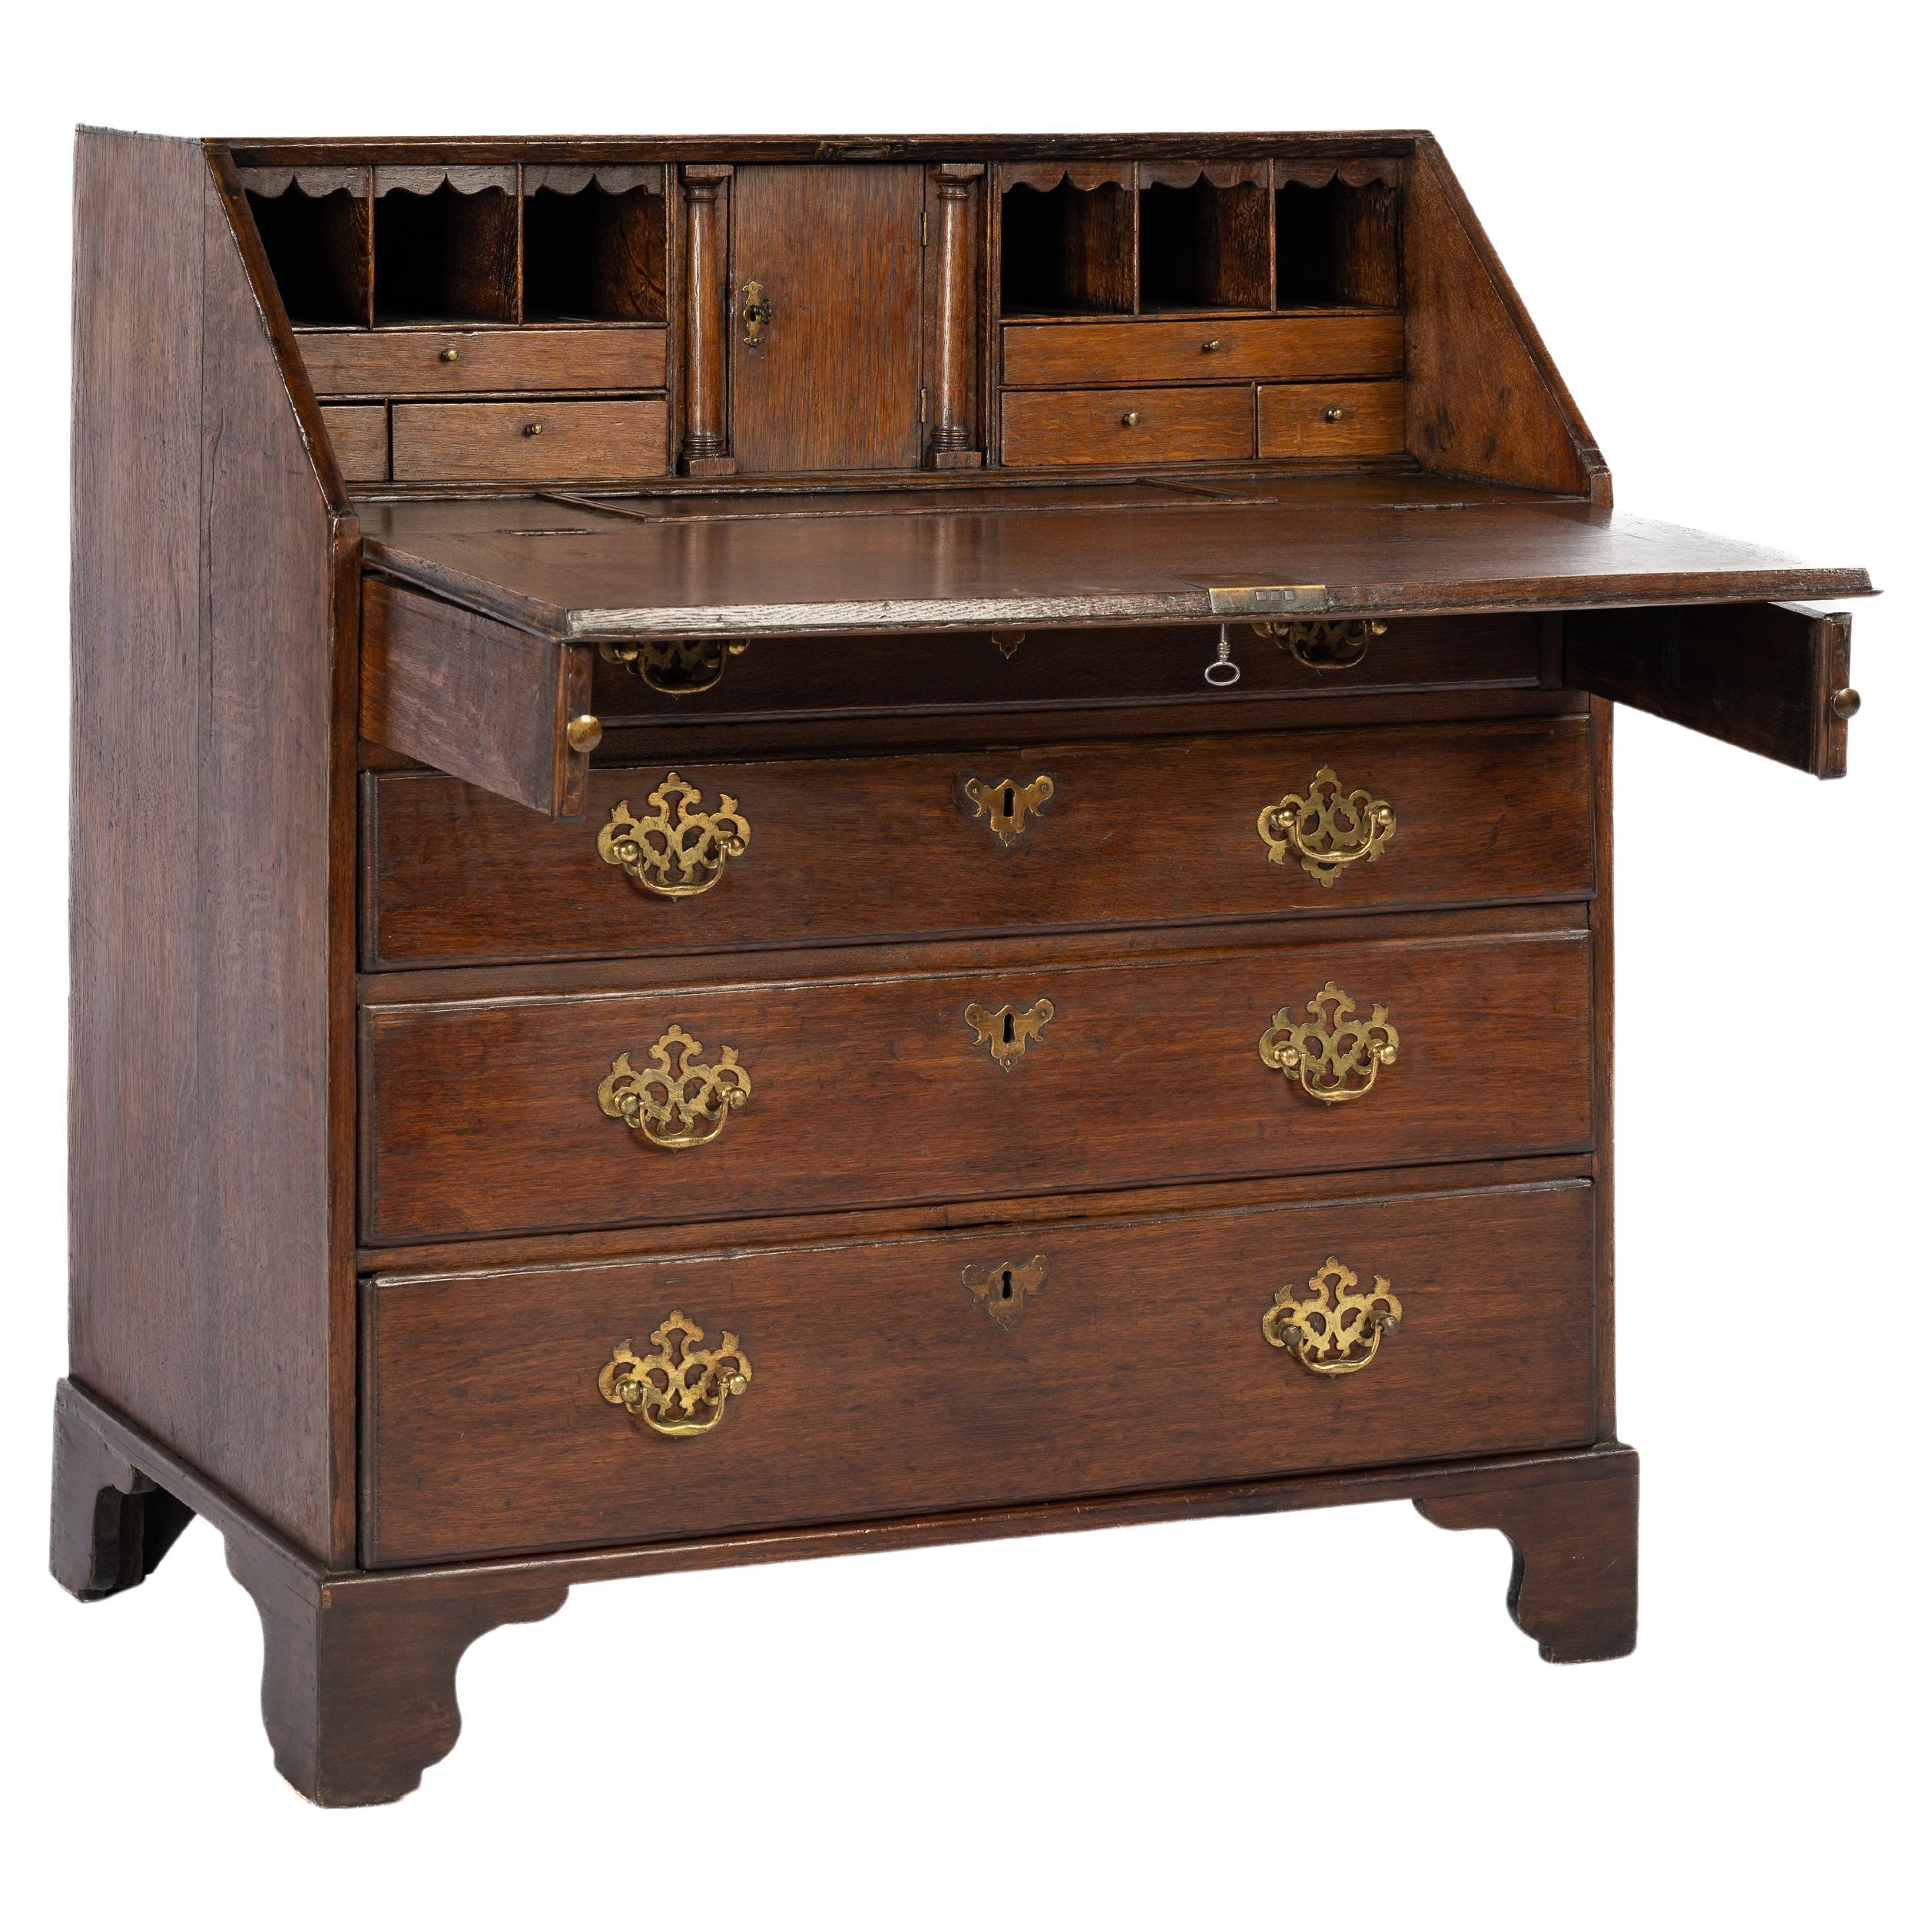 Antique 18th century warm brown English Oak Queen Anne Slant-Front Desk For Sale